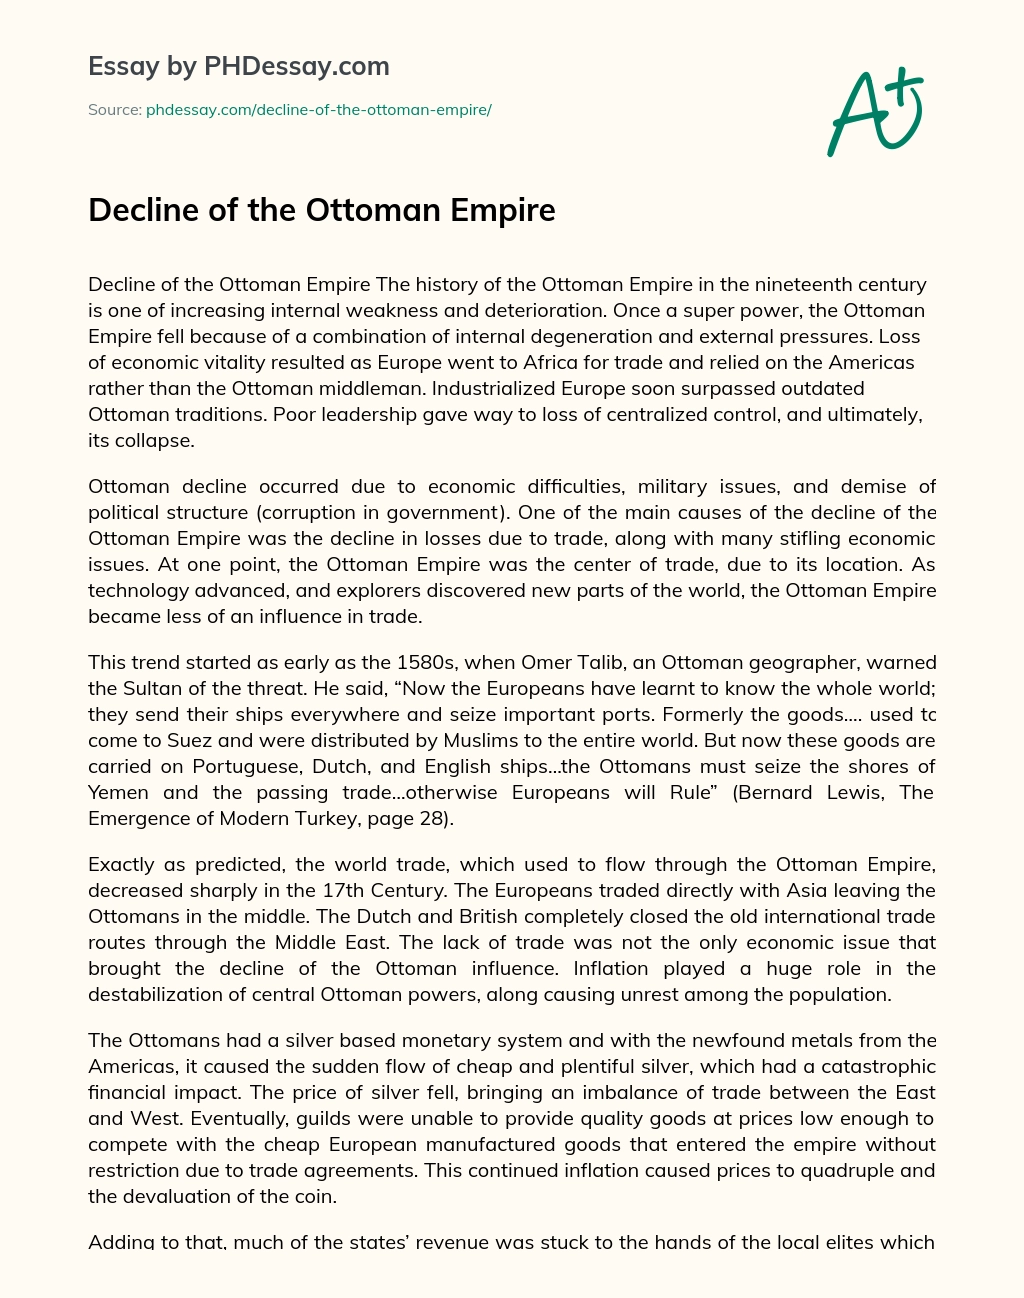 Decline of the Ottoman Empire essay